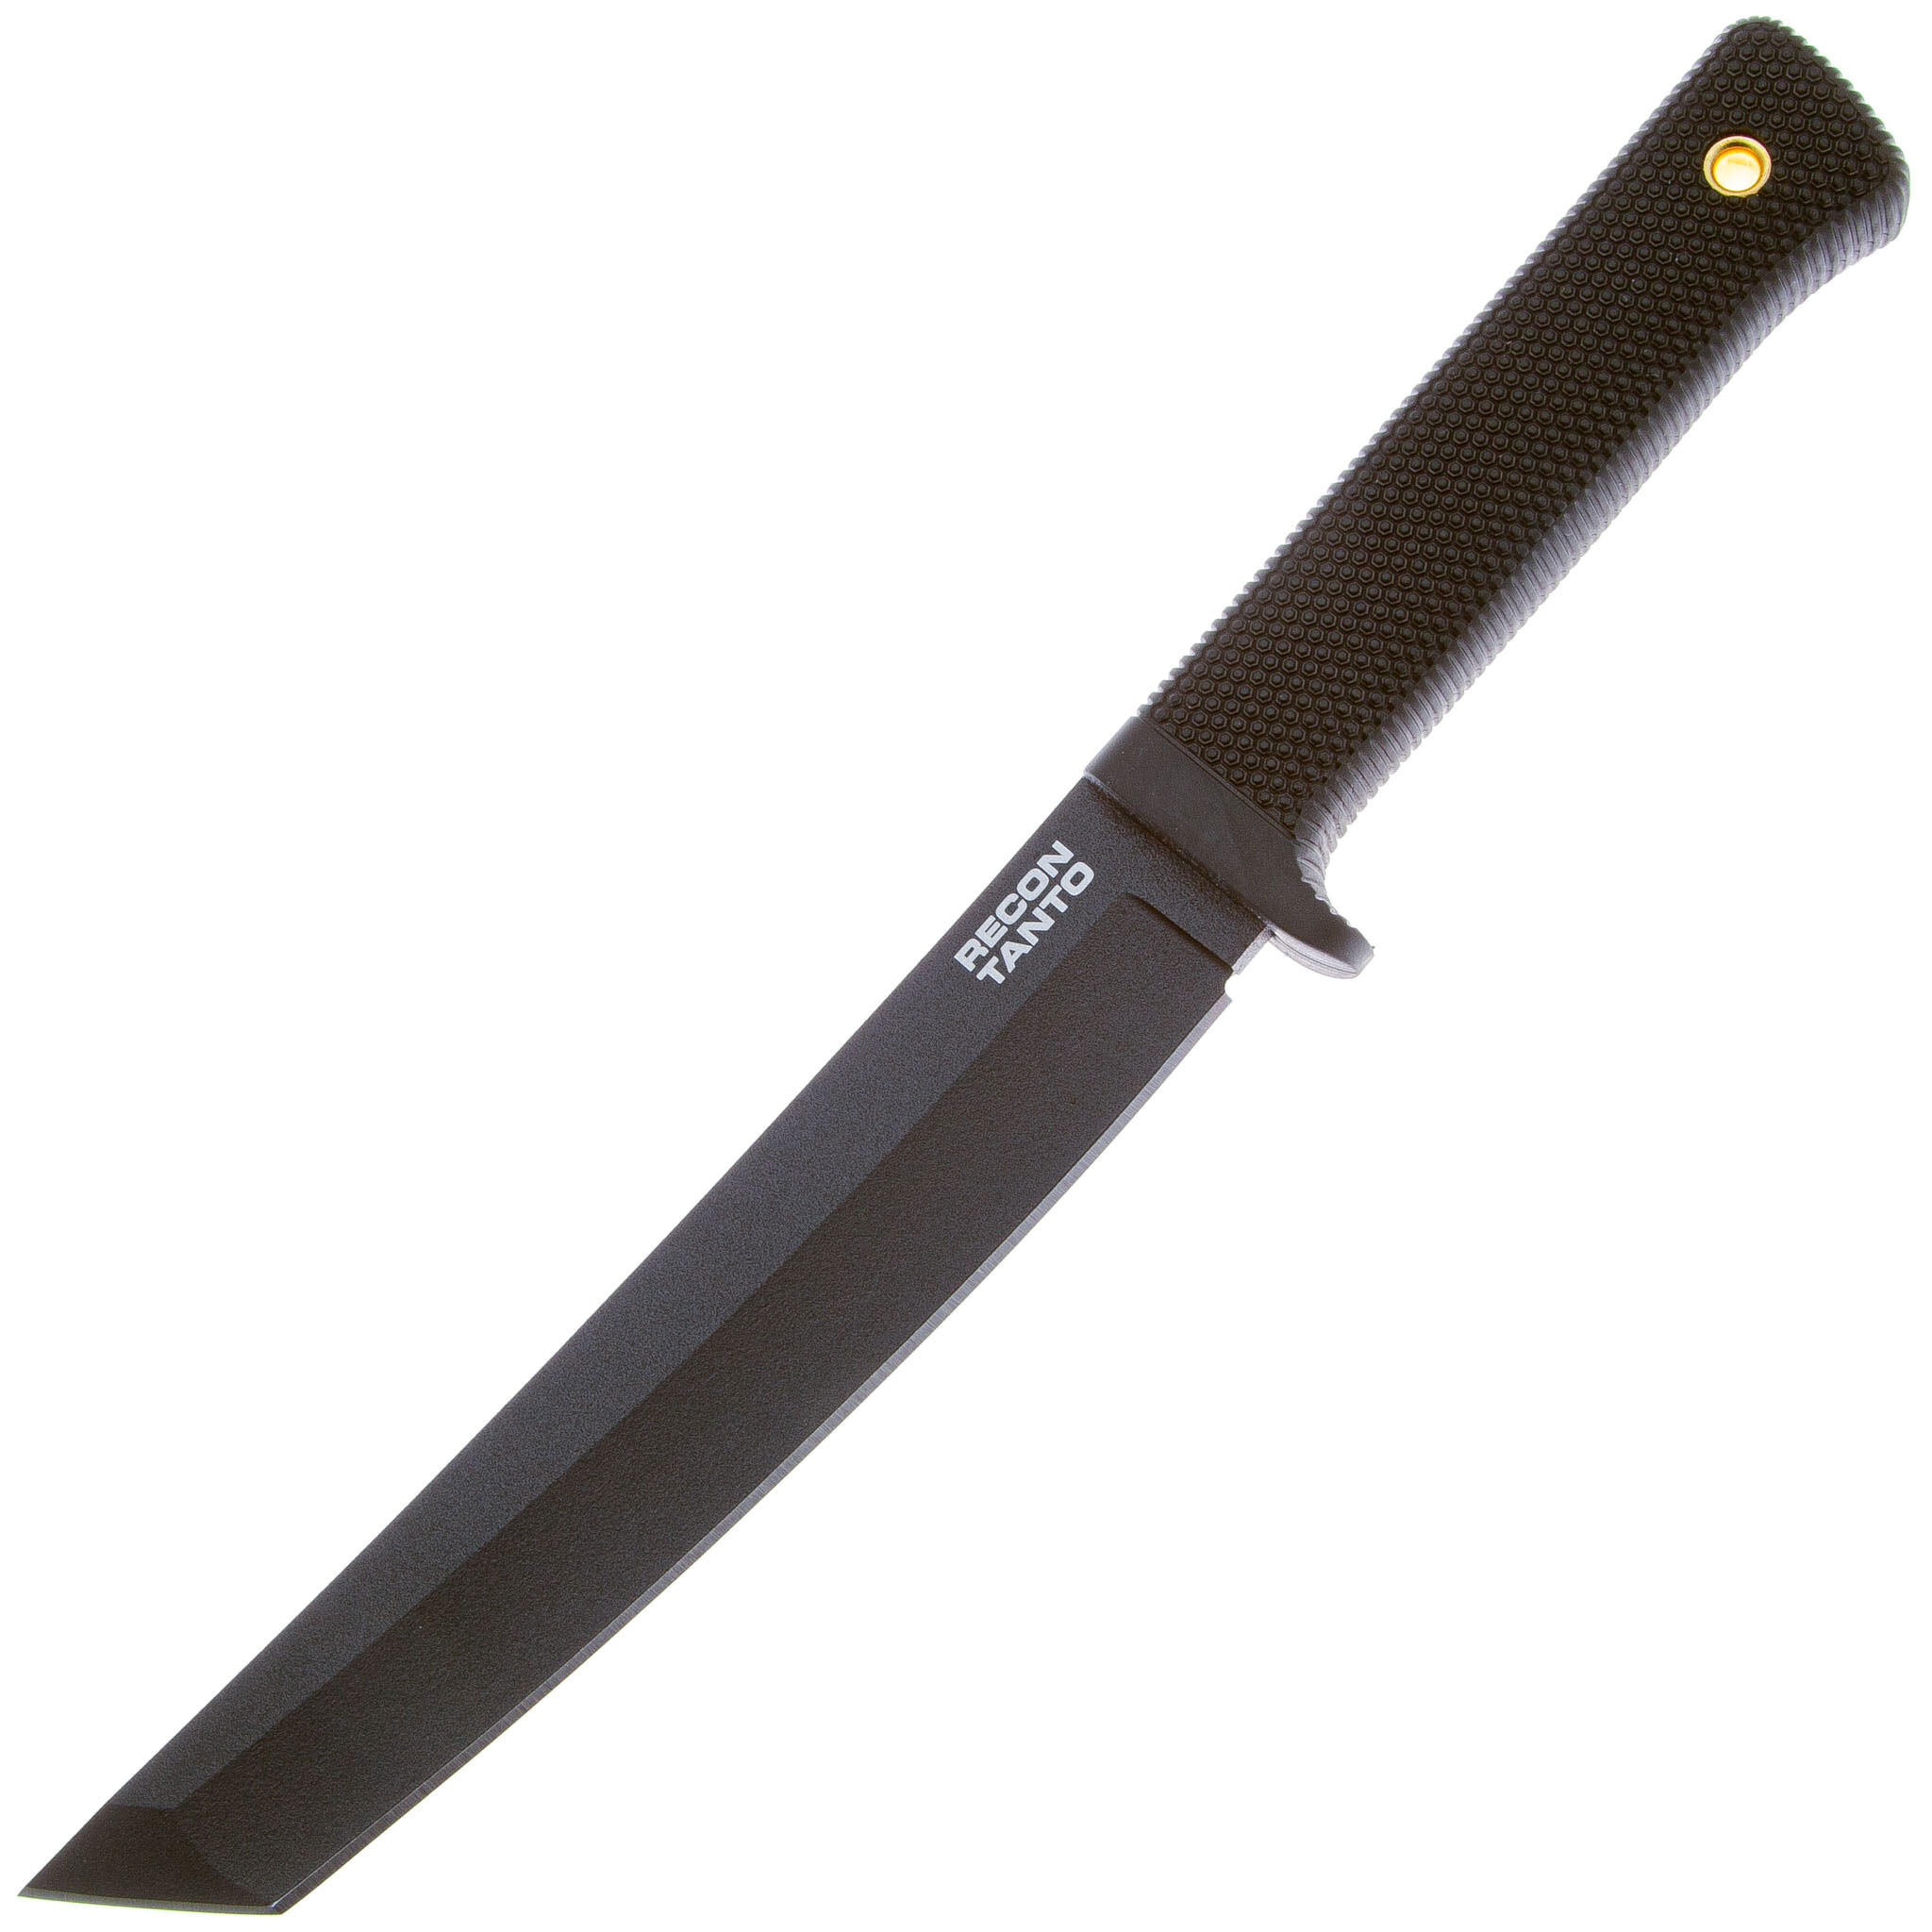 Нож с фиксированным клинком Cold Steel Recon Tanto, сталь SK-5, рукоять резина, black нож cold steel recon tanto 49lrt сталь sk 5 рукоять резина